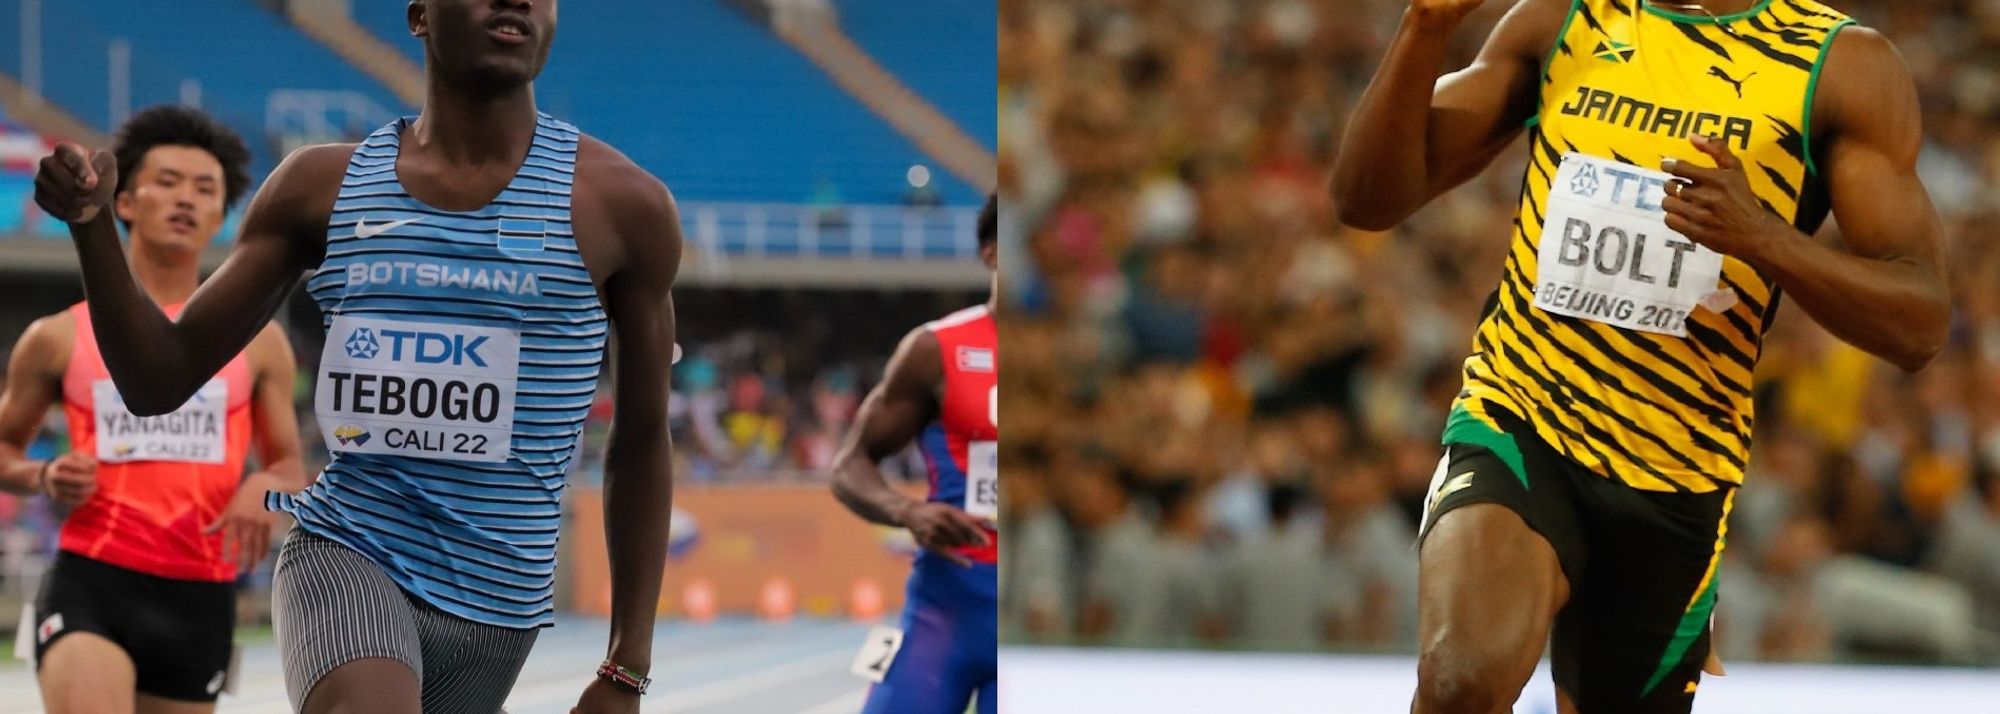 El campeón de los 100 metros planos en el Campeonato Mundial de Atletismo sub 20 Cali 22 es comparado en todos los idiomas con el plusmarquista y reconocido Usain Bolt, quien ostenta el récord mundial absoluto de esta modalidad con la marca de 9,58 segundos, lograda en Berlín, 2009 (categoría de mayores). 